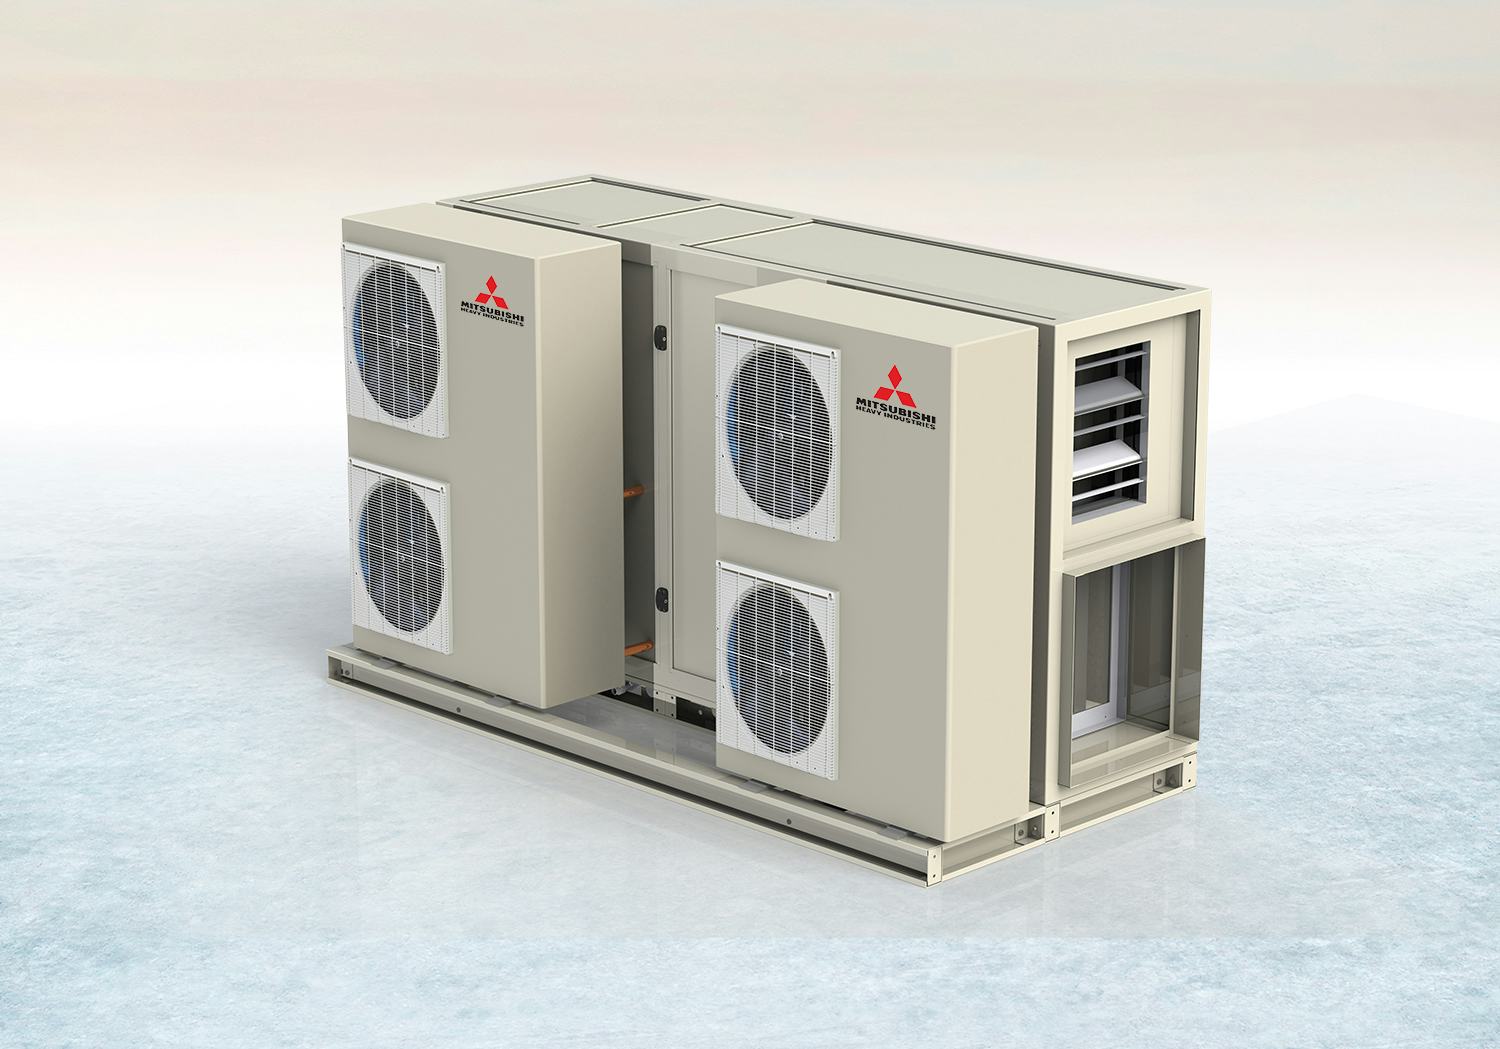 Luchtbehandelingskast ClimaPac uitgebreid voor koelen, verwarmen én ventileren